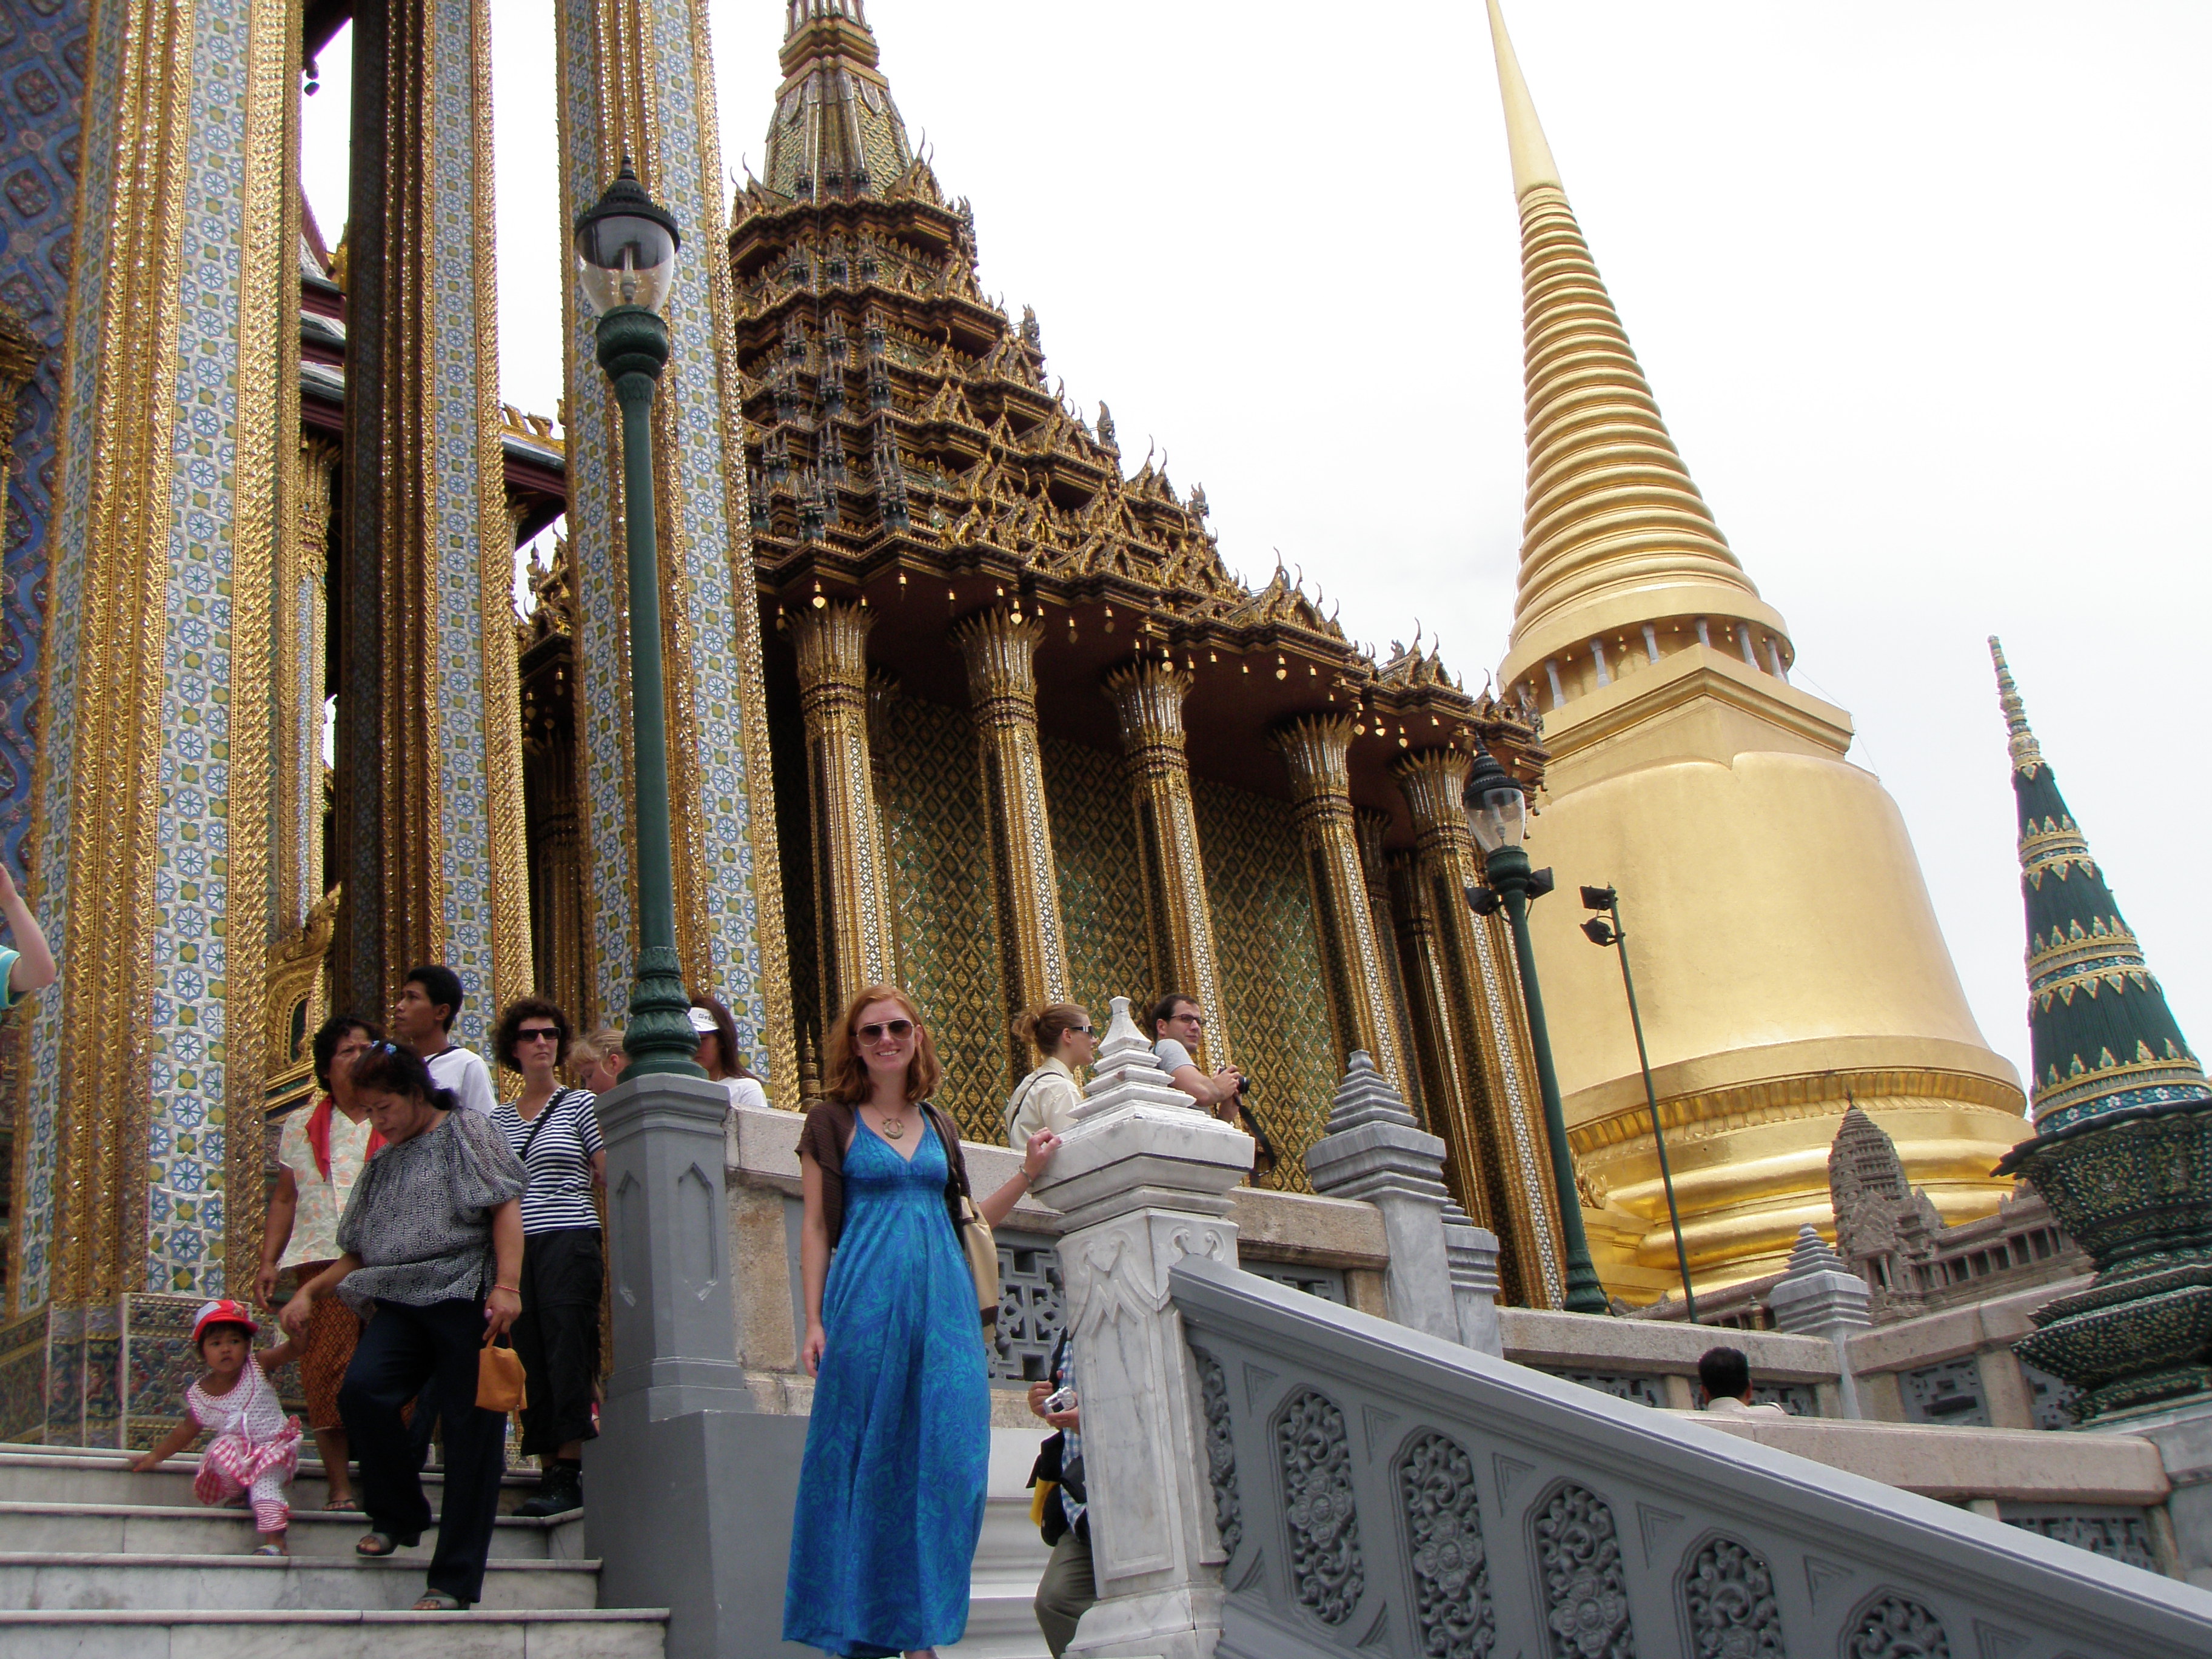 At the Grand Palace in Bangkok